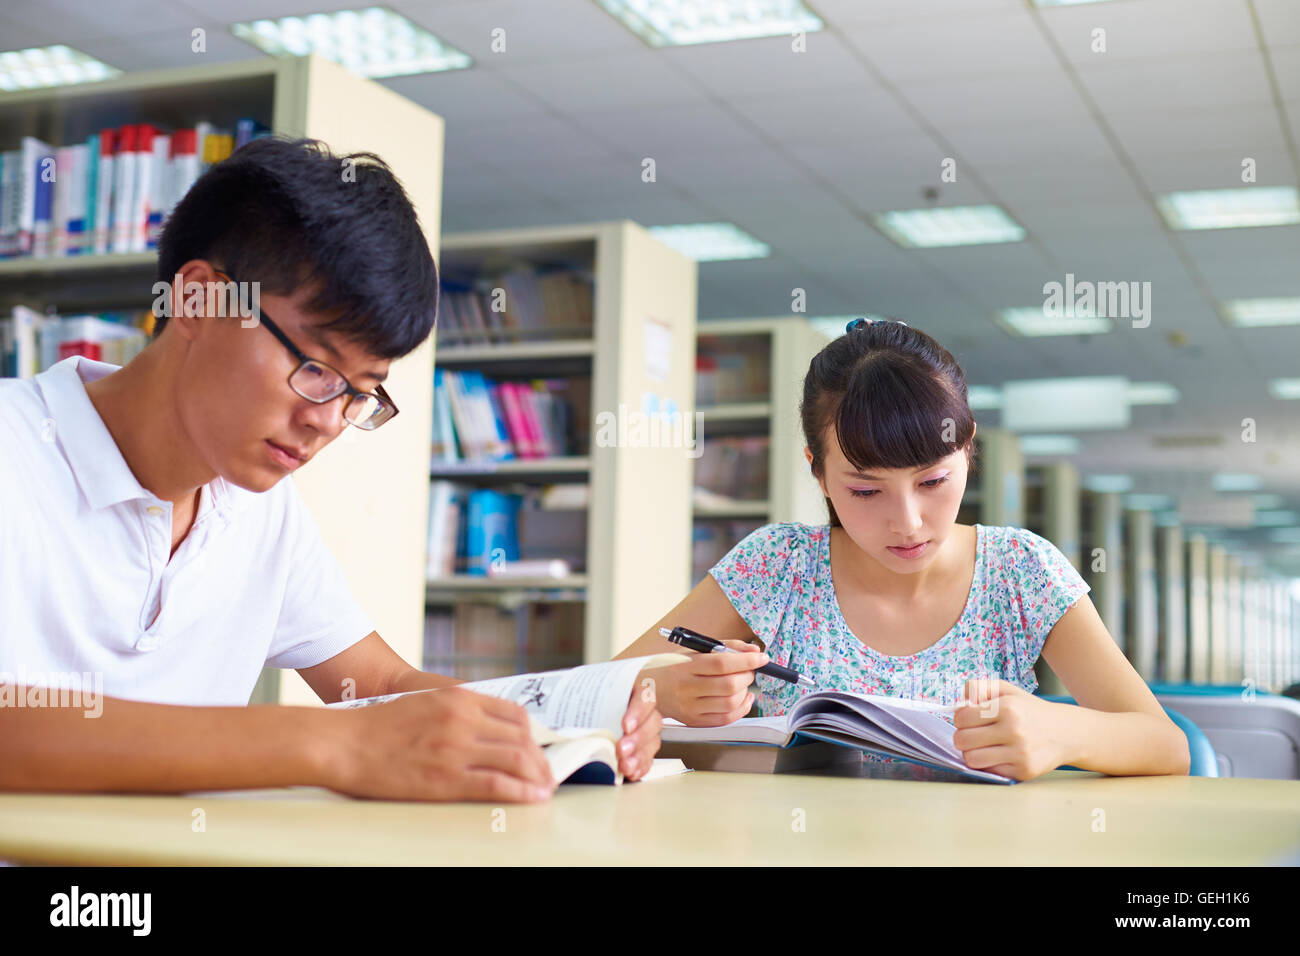 Los jóvenes asiáticos o estudiantes universitarios chinos estudian juntos en la biblioteca Foto de stock